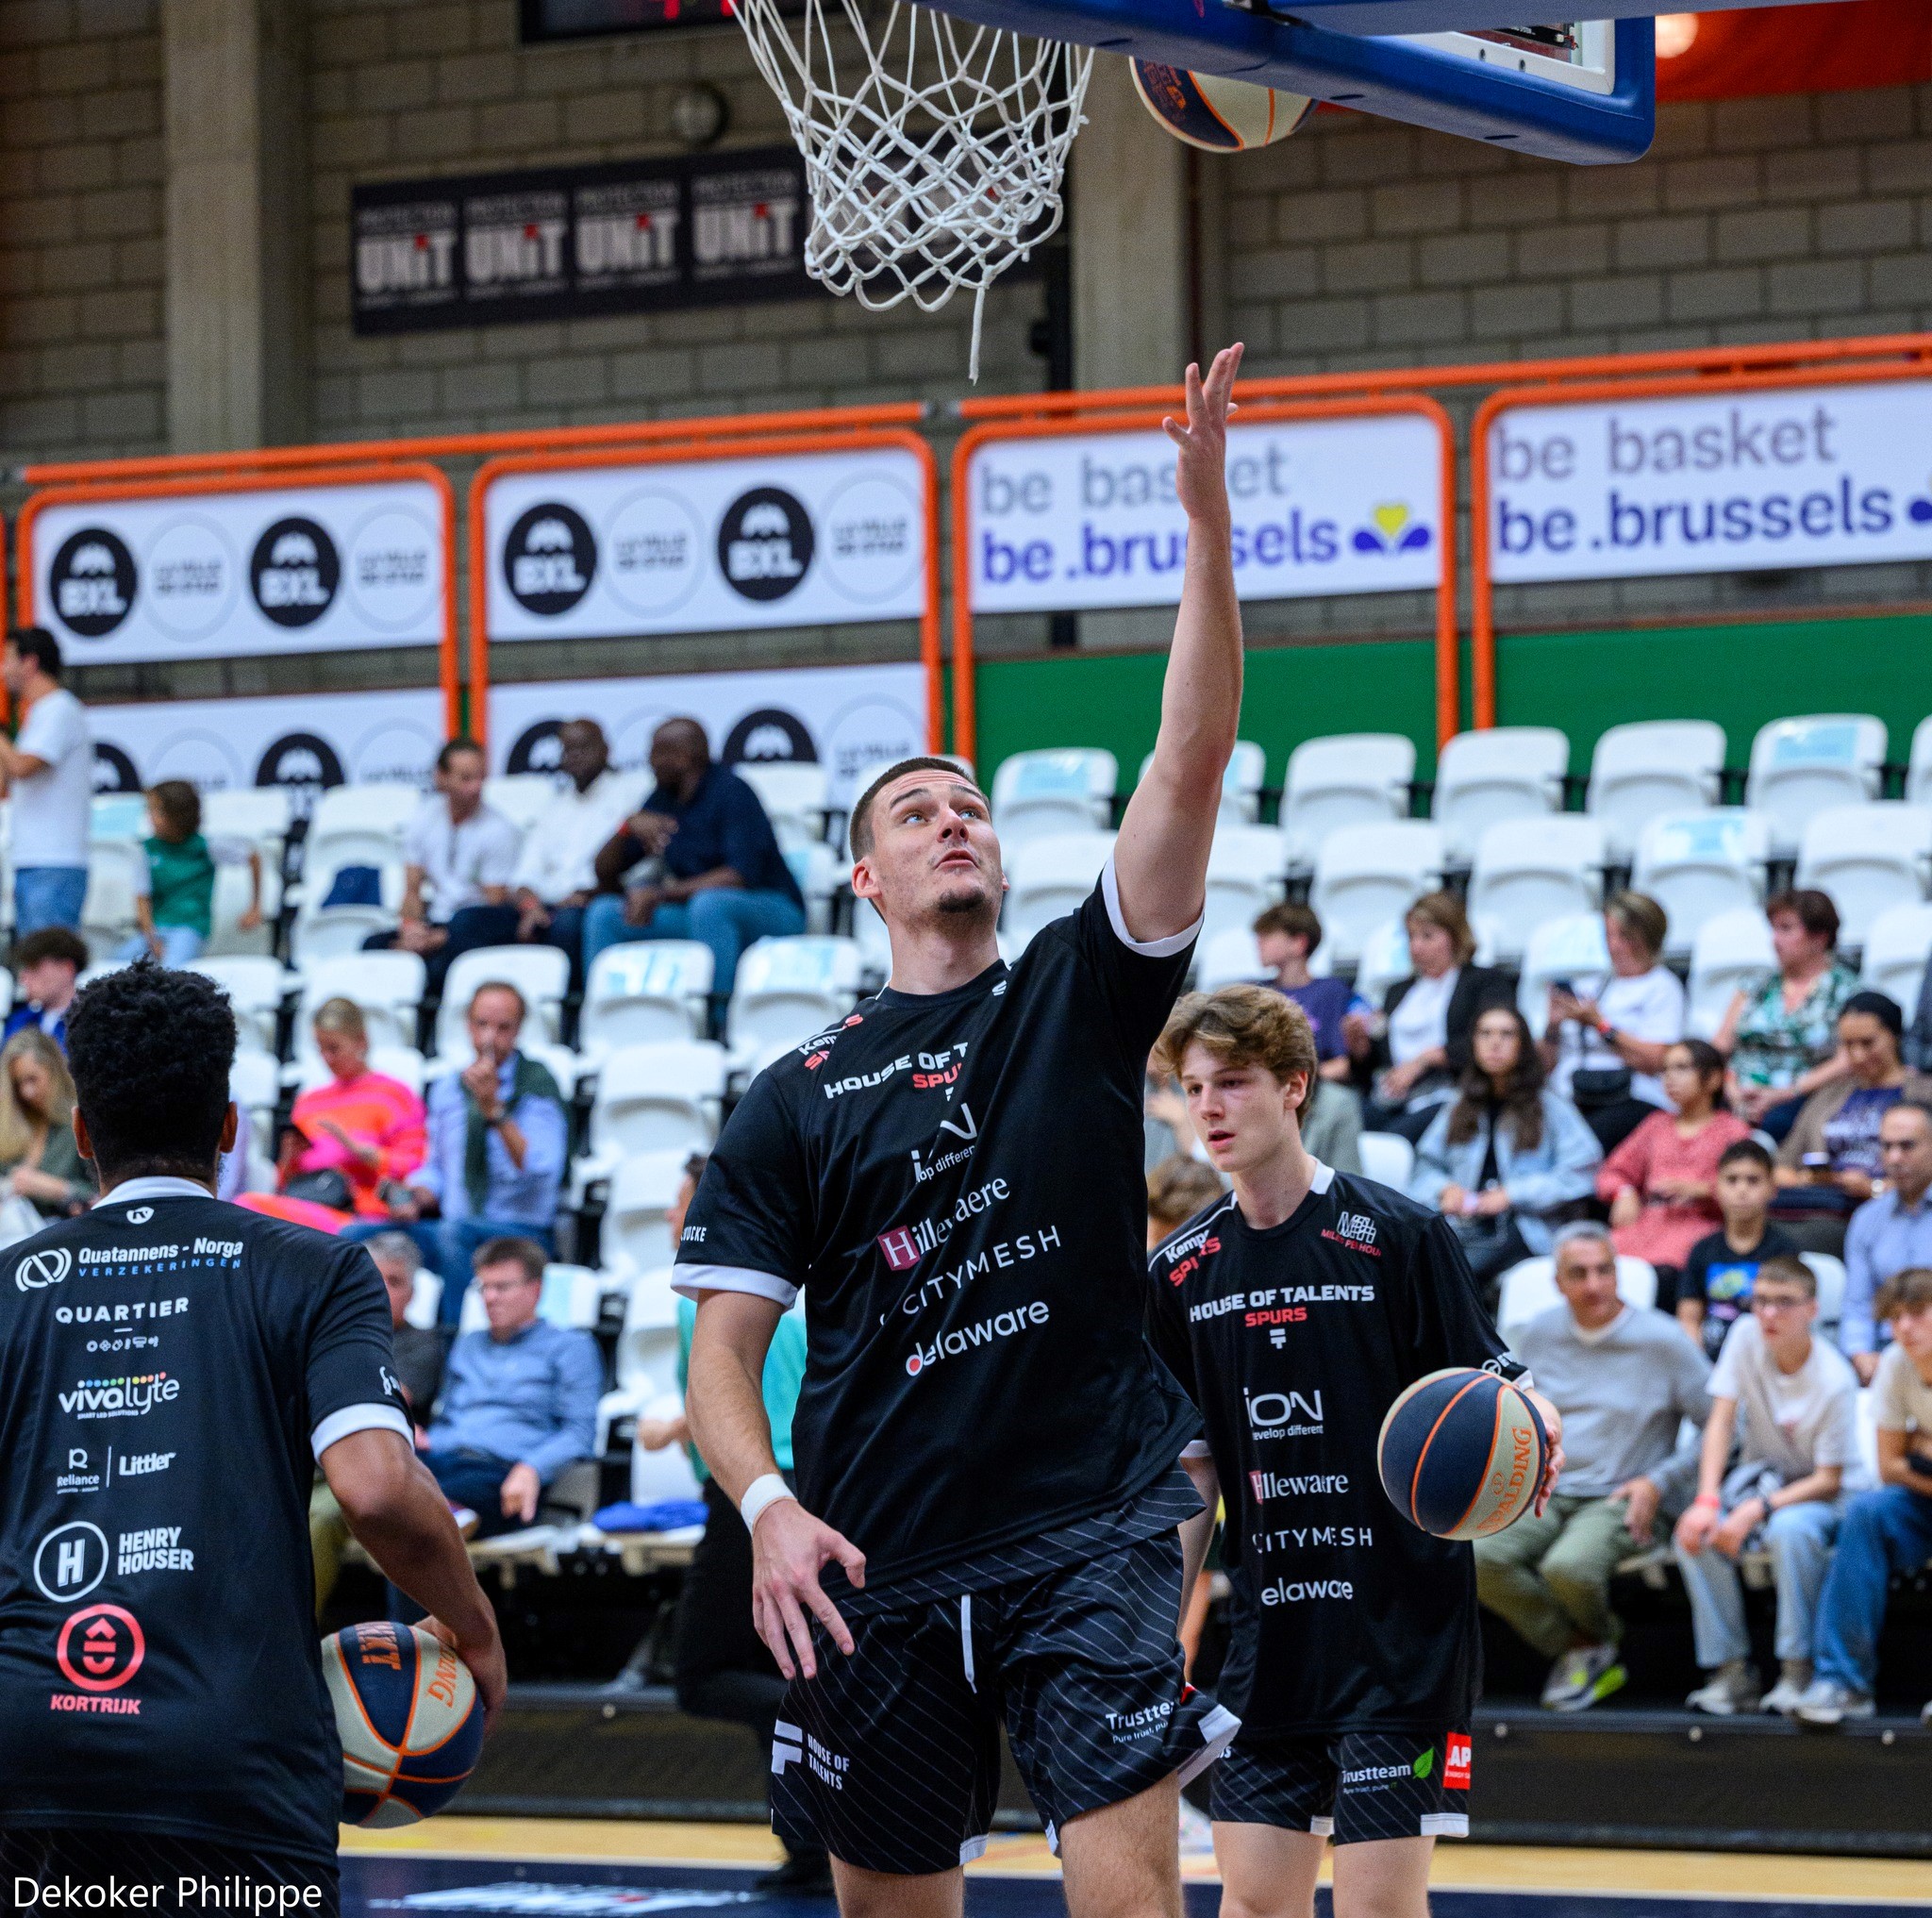 Vivalyte sponsorship Kortrijk SPurs Basketball Team